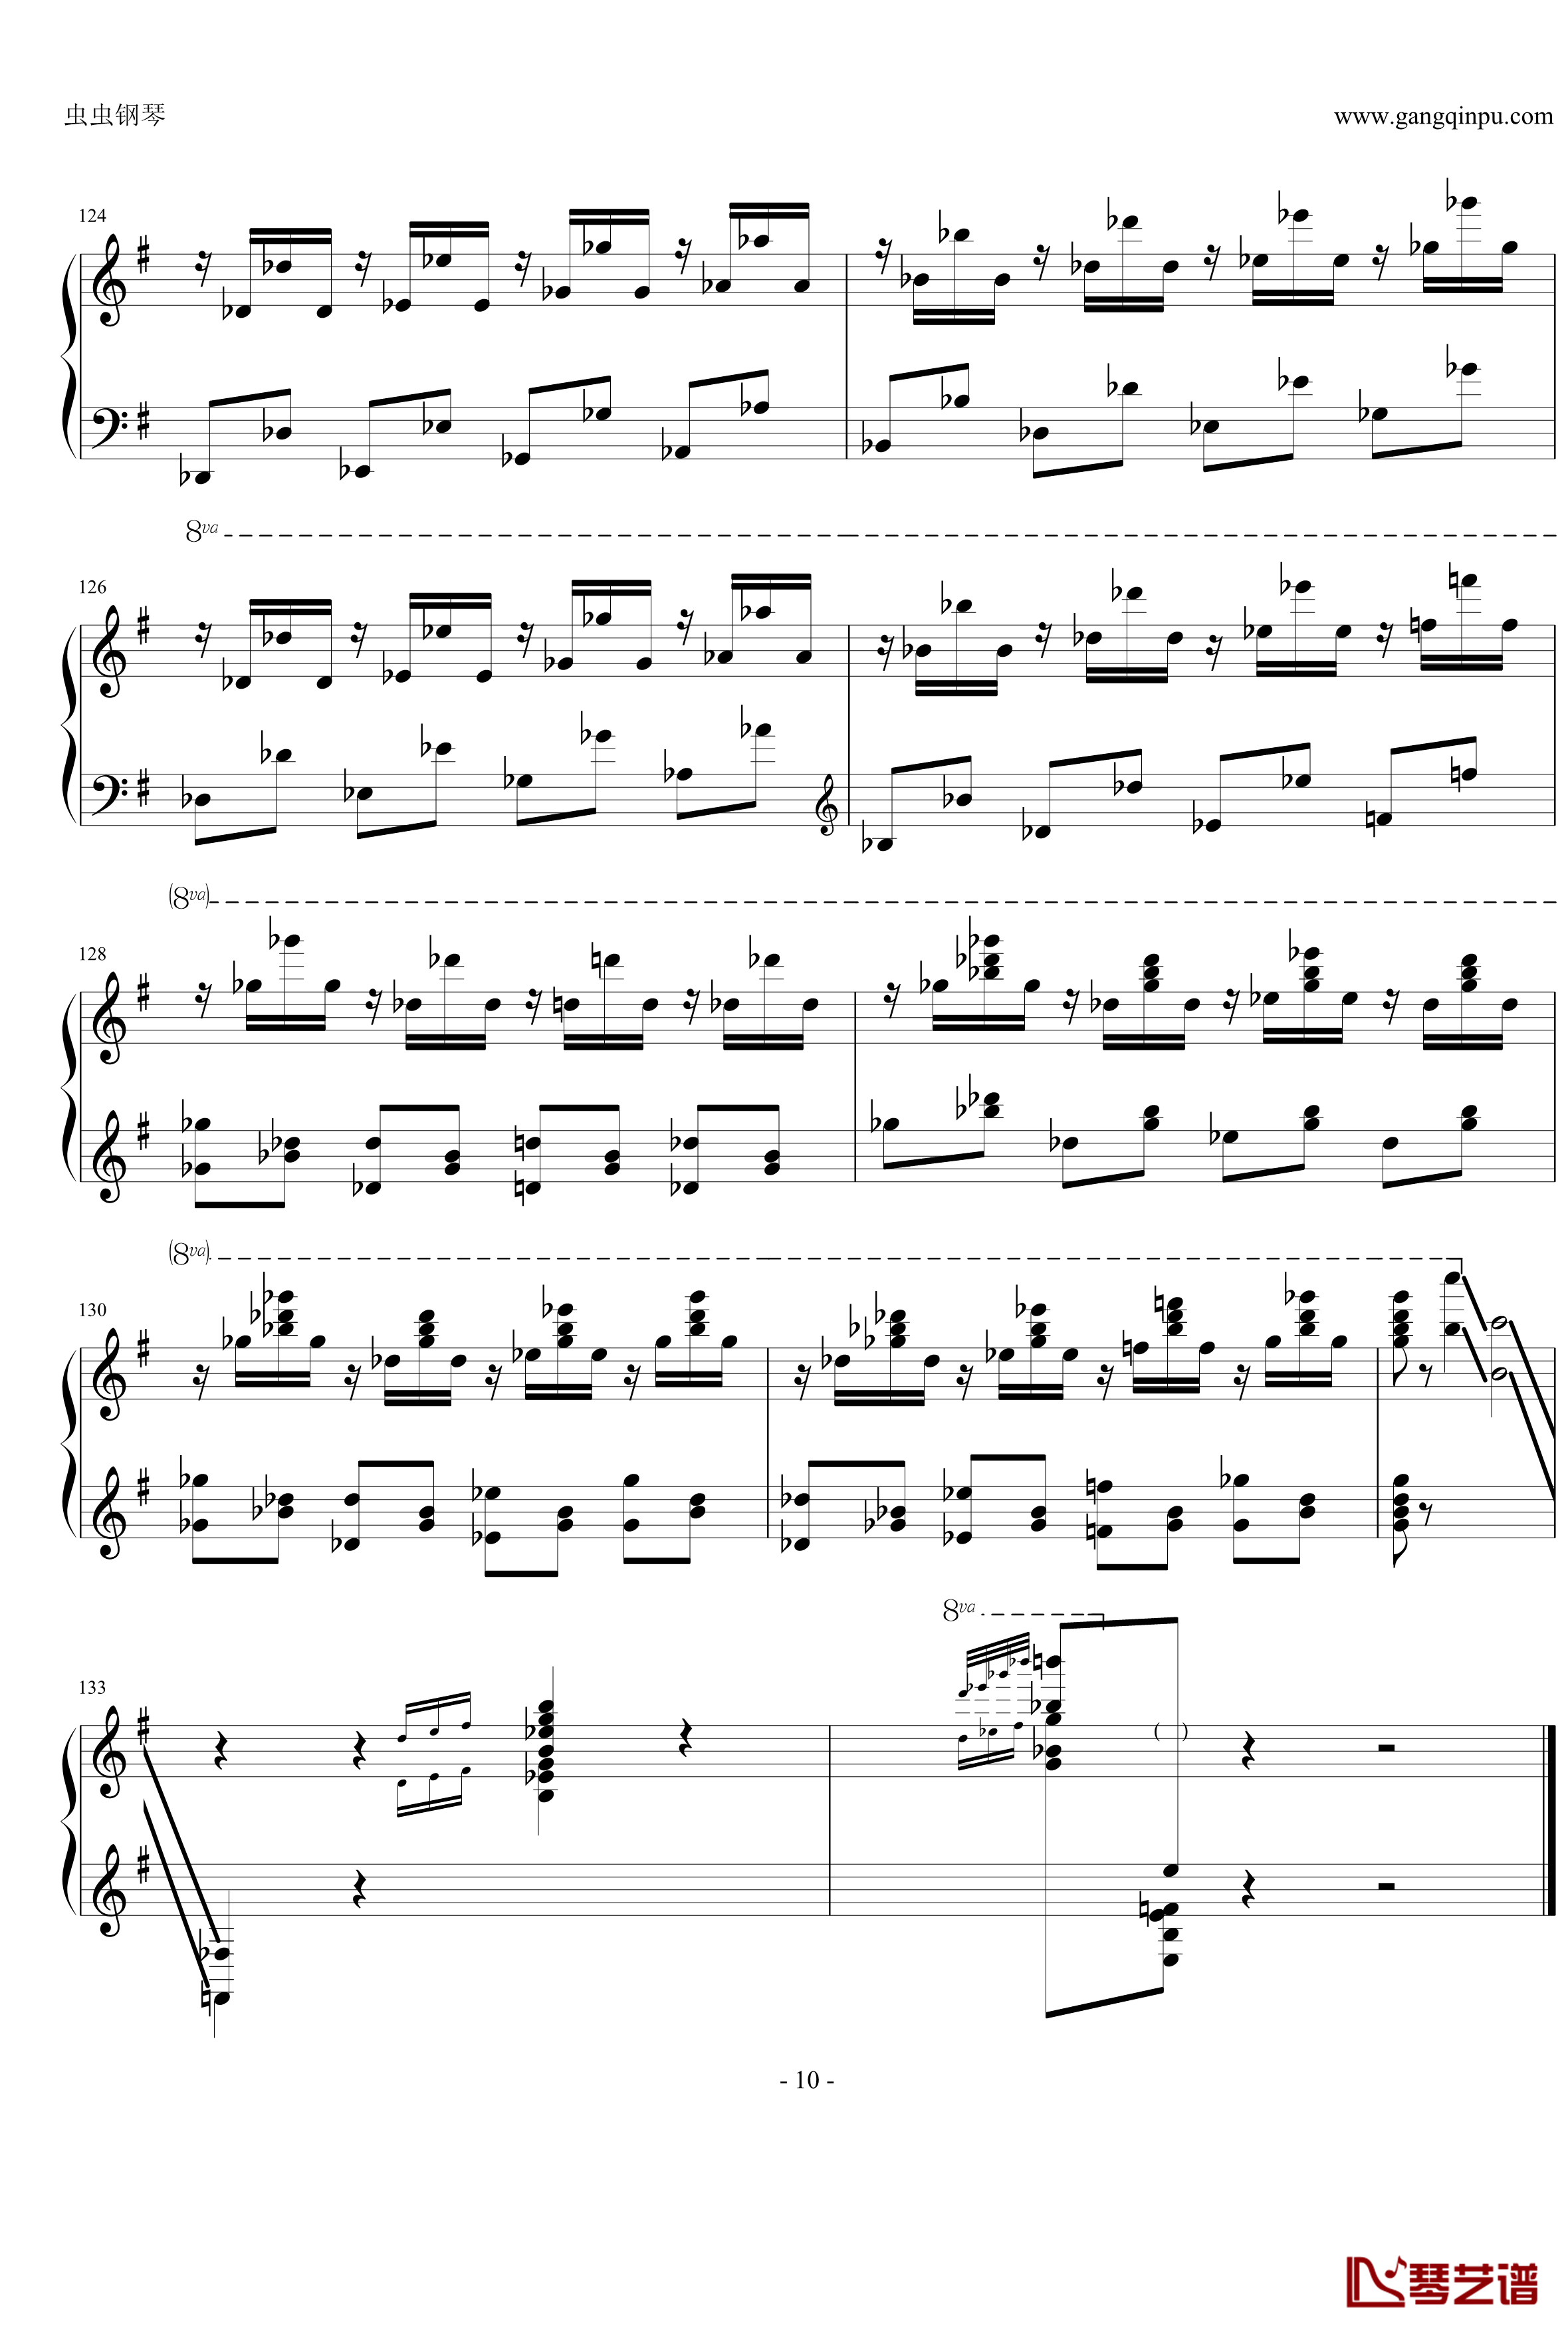 马刀舞曲钢琴谱-齐夫拉10